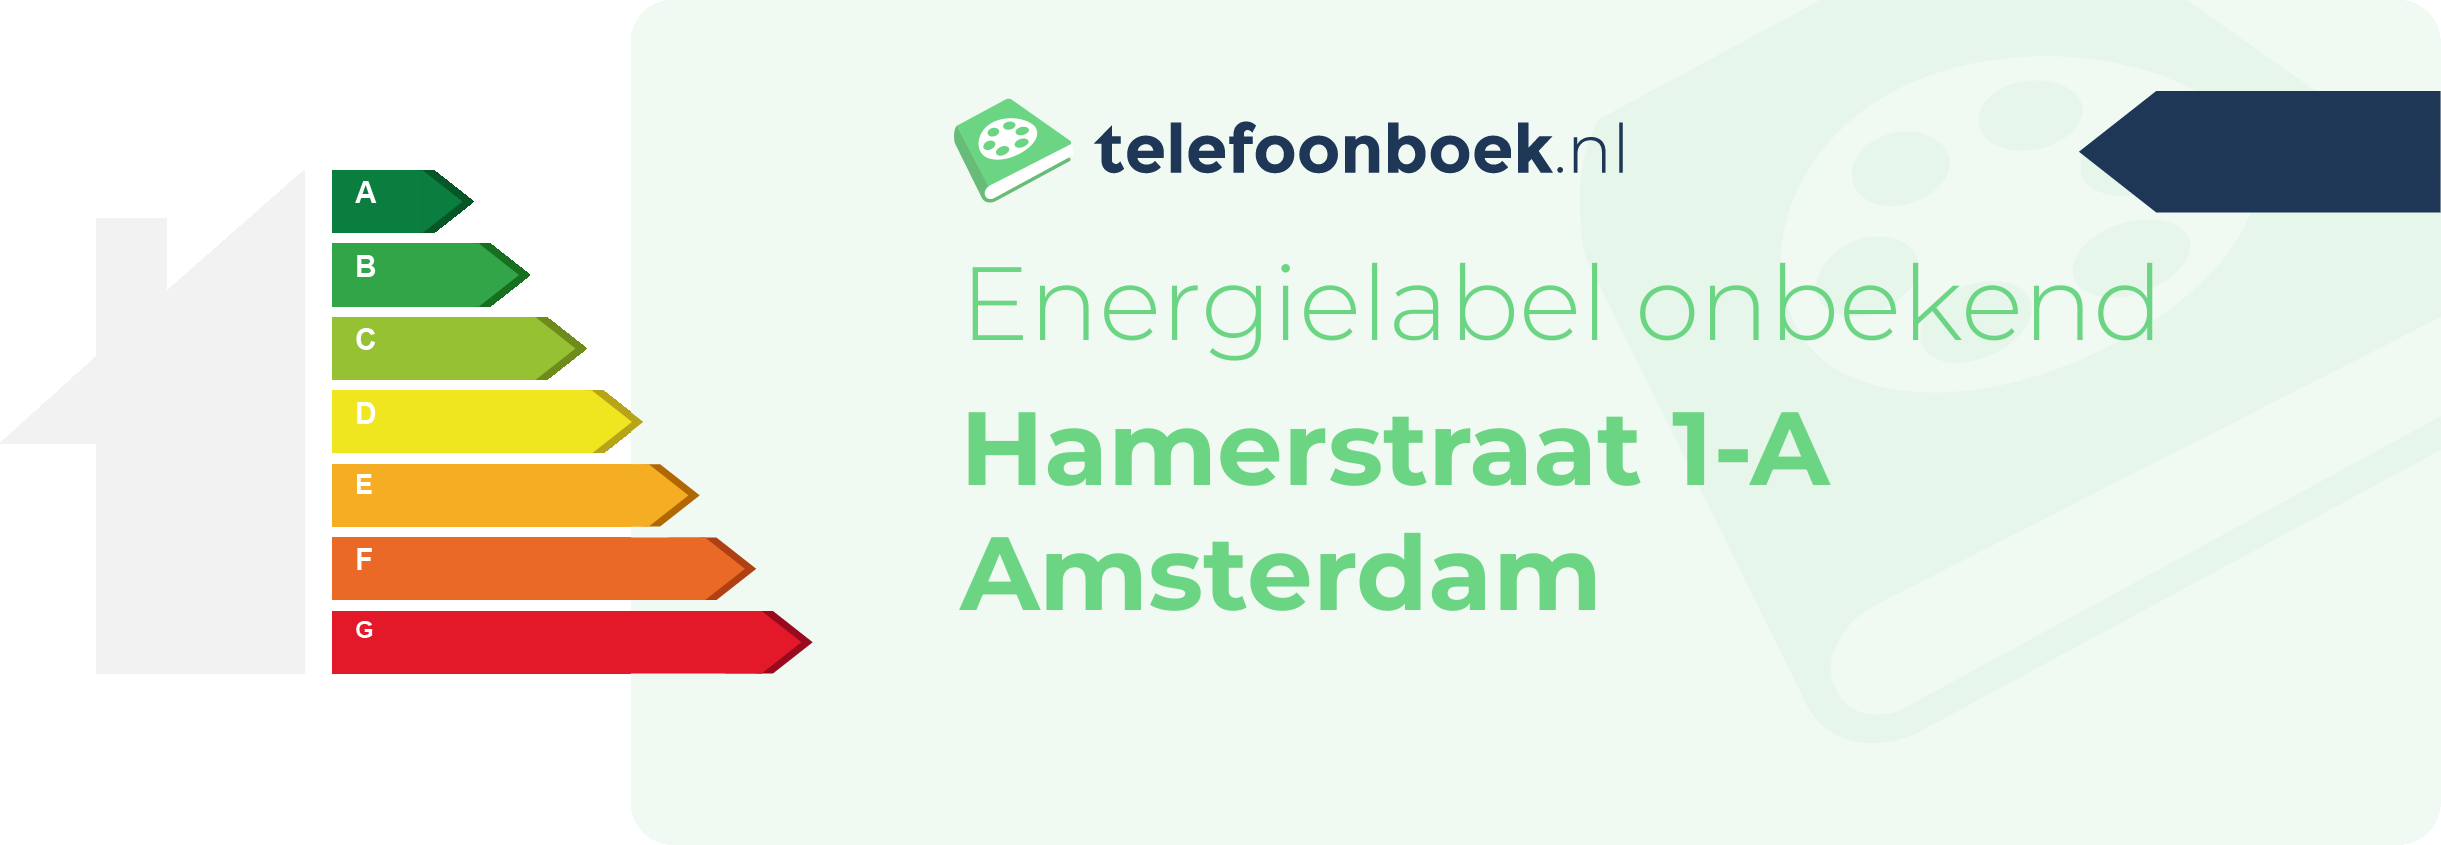 Energielabel Hamerstraat 1-A Amsterdam